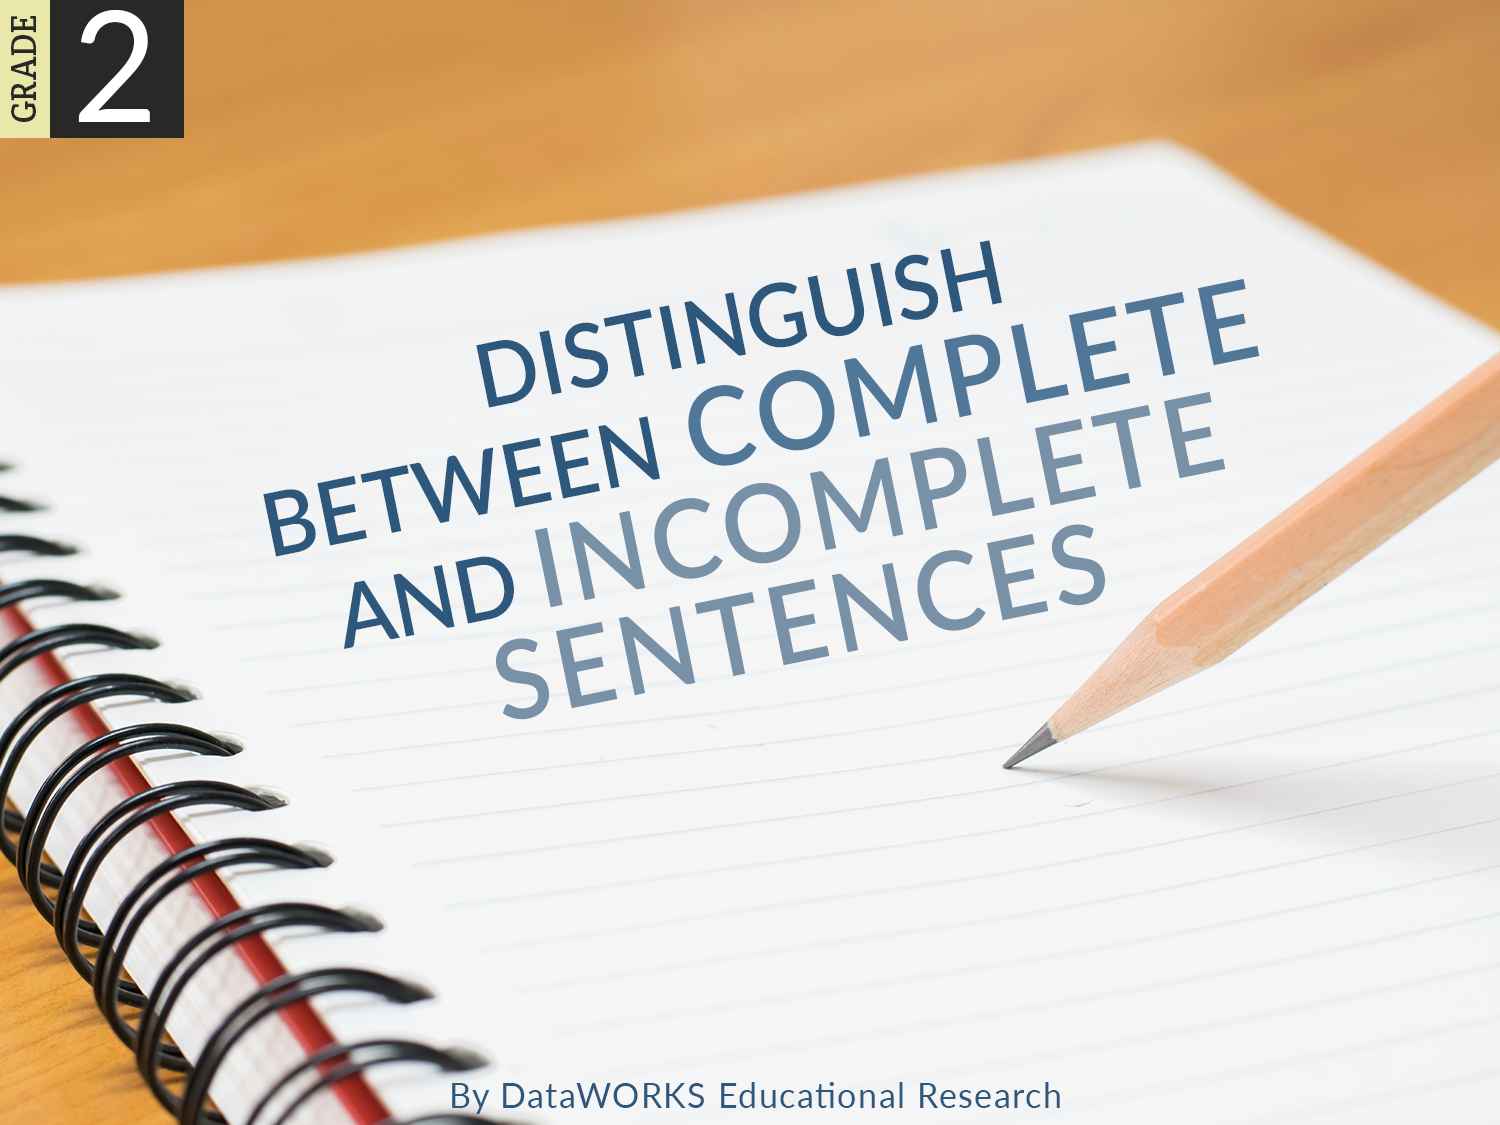 Complete Sentences Vs Incomplete Sentences